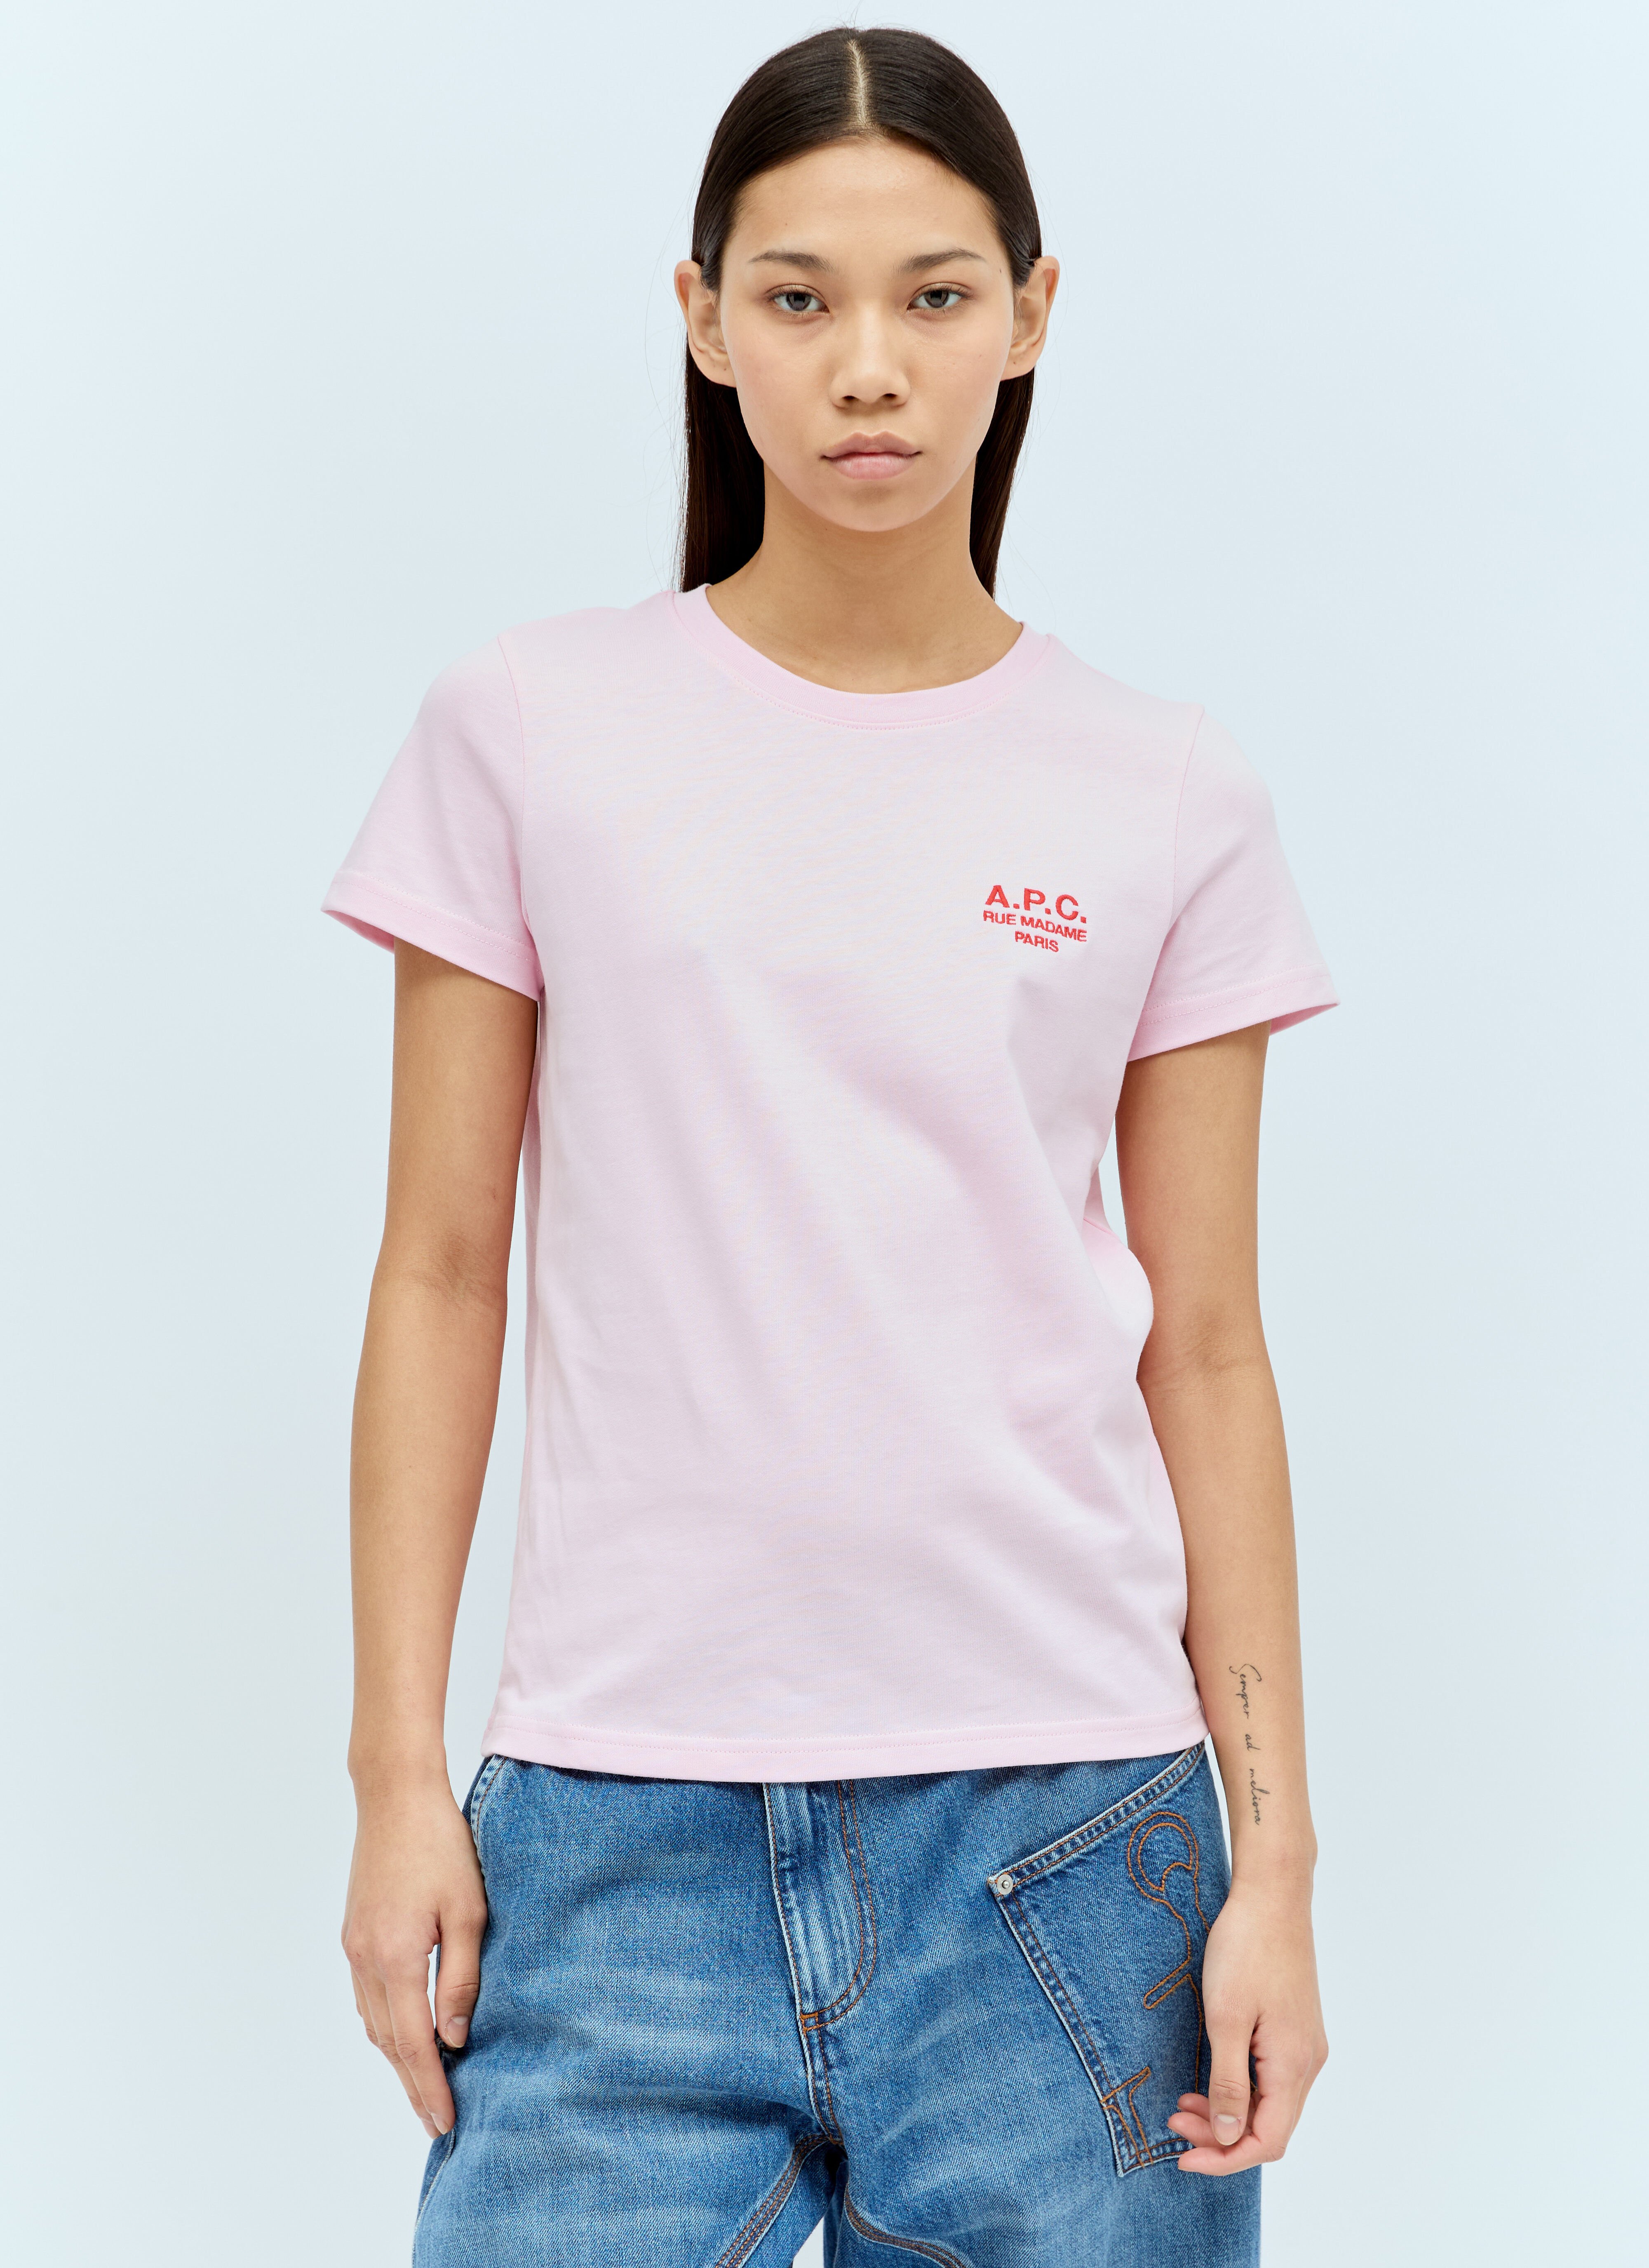 A.P.C. 데니즈 티셔츠 브라운 apc0256001